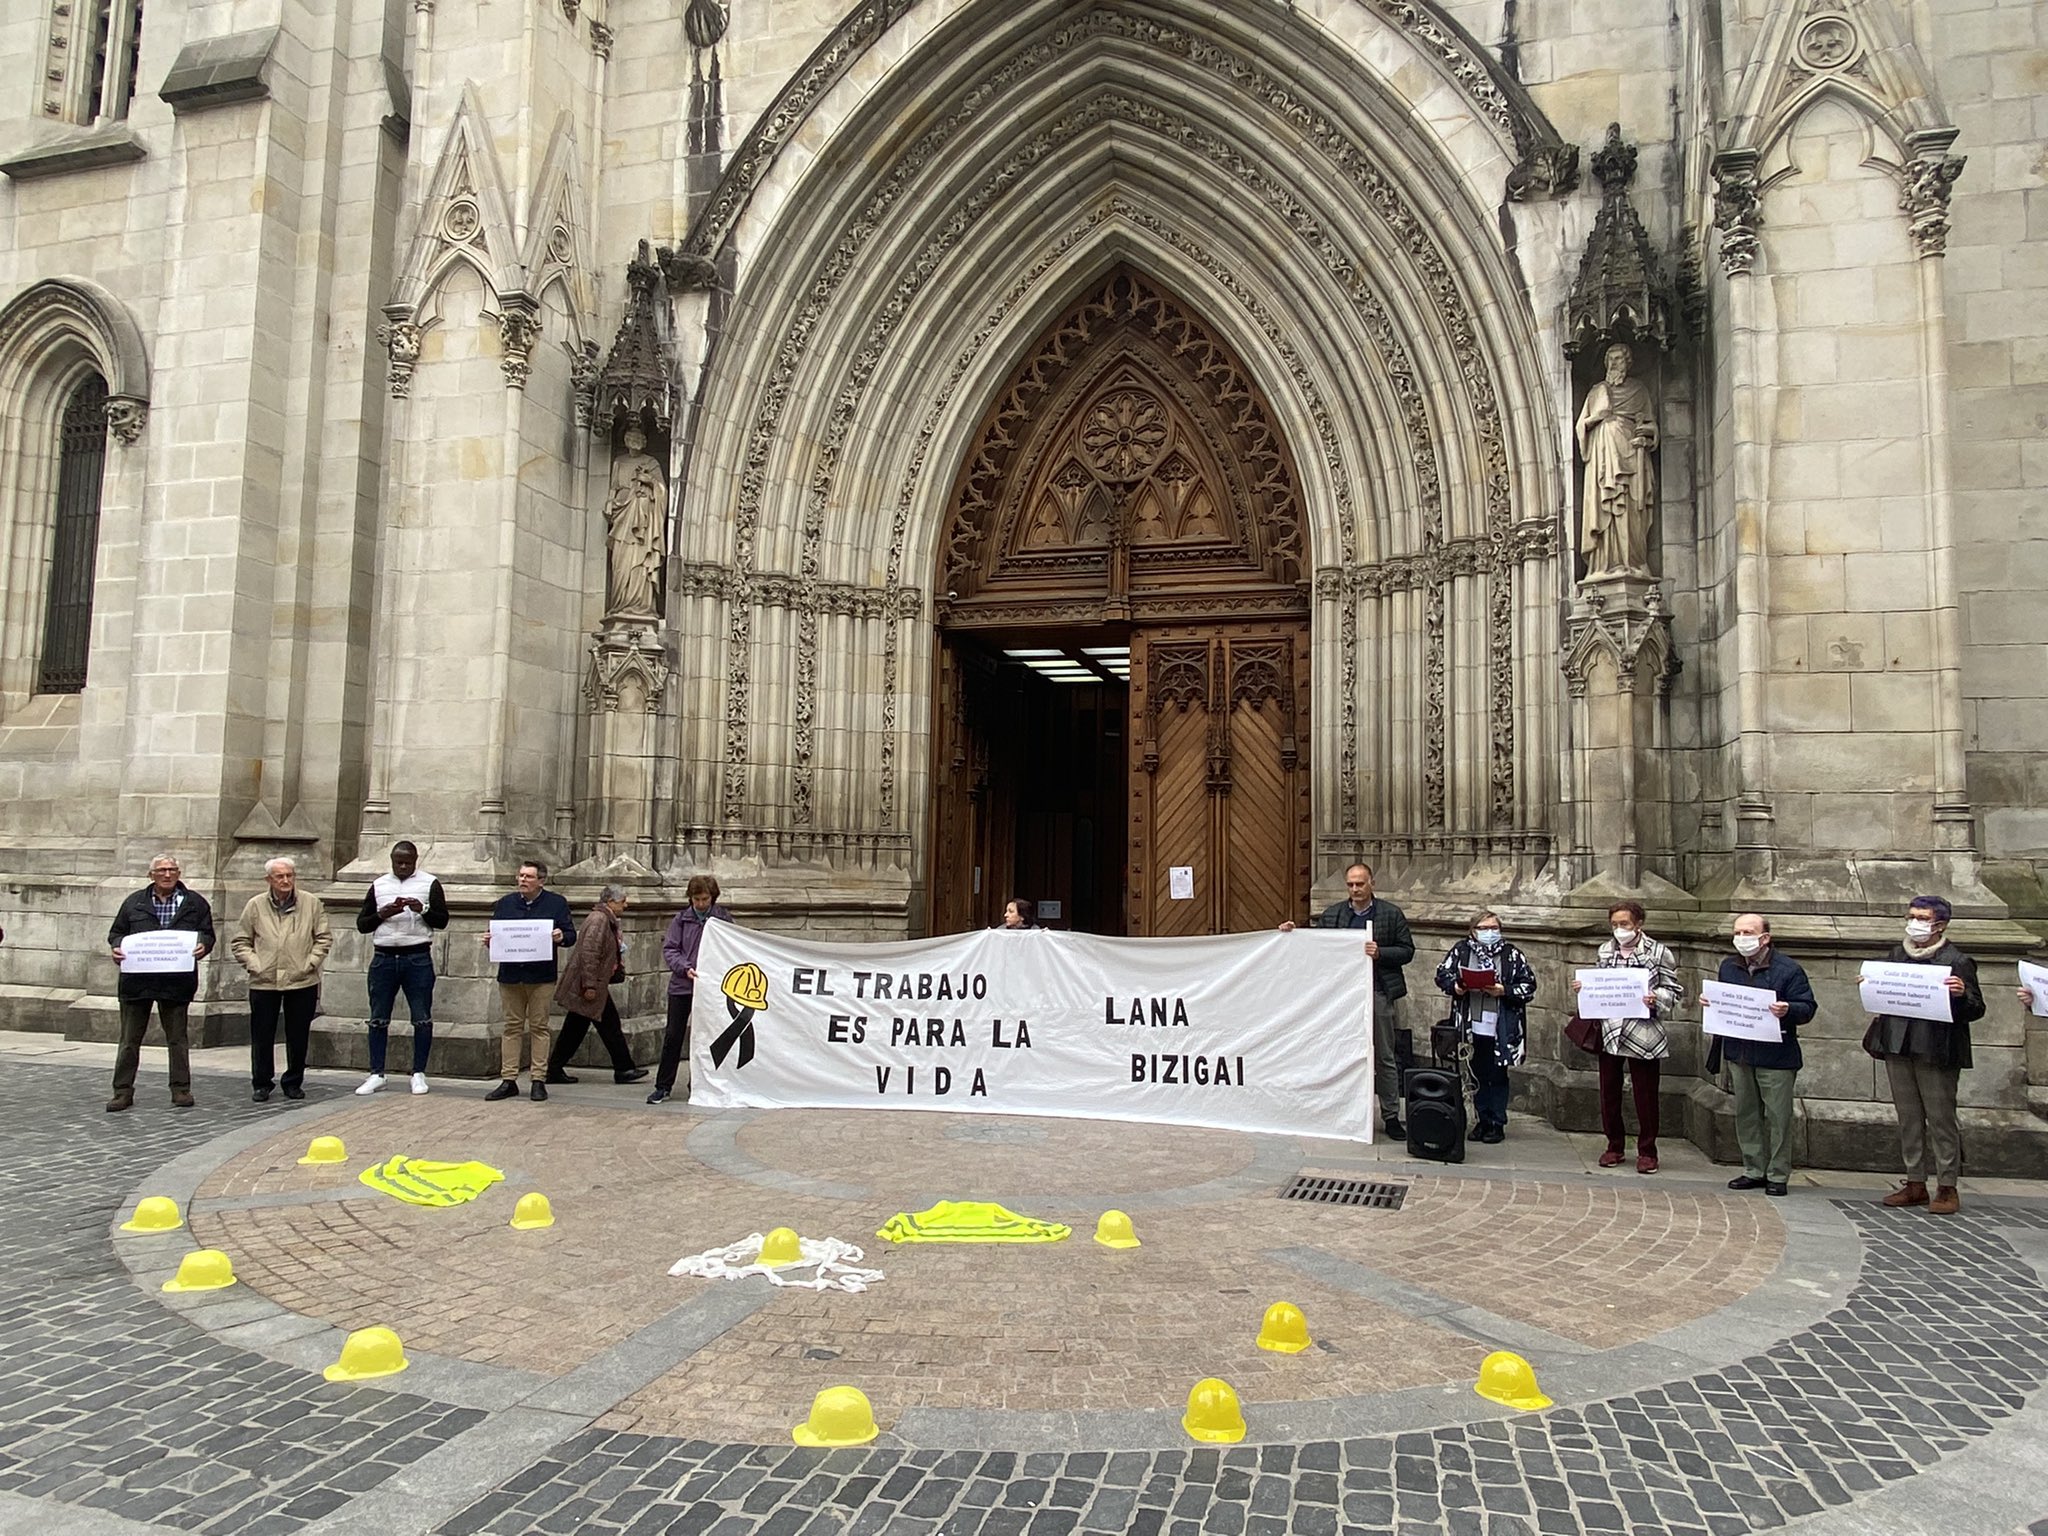 El obispo de Astorga ante los datos de siniestralidad laboral en España: “no nos dejan indiferentes”